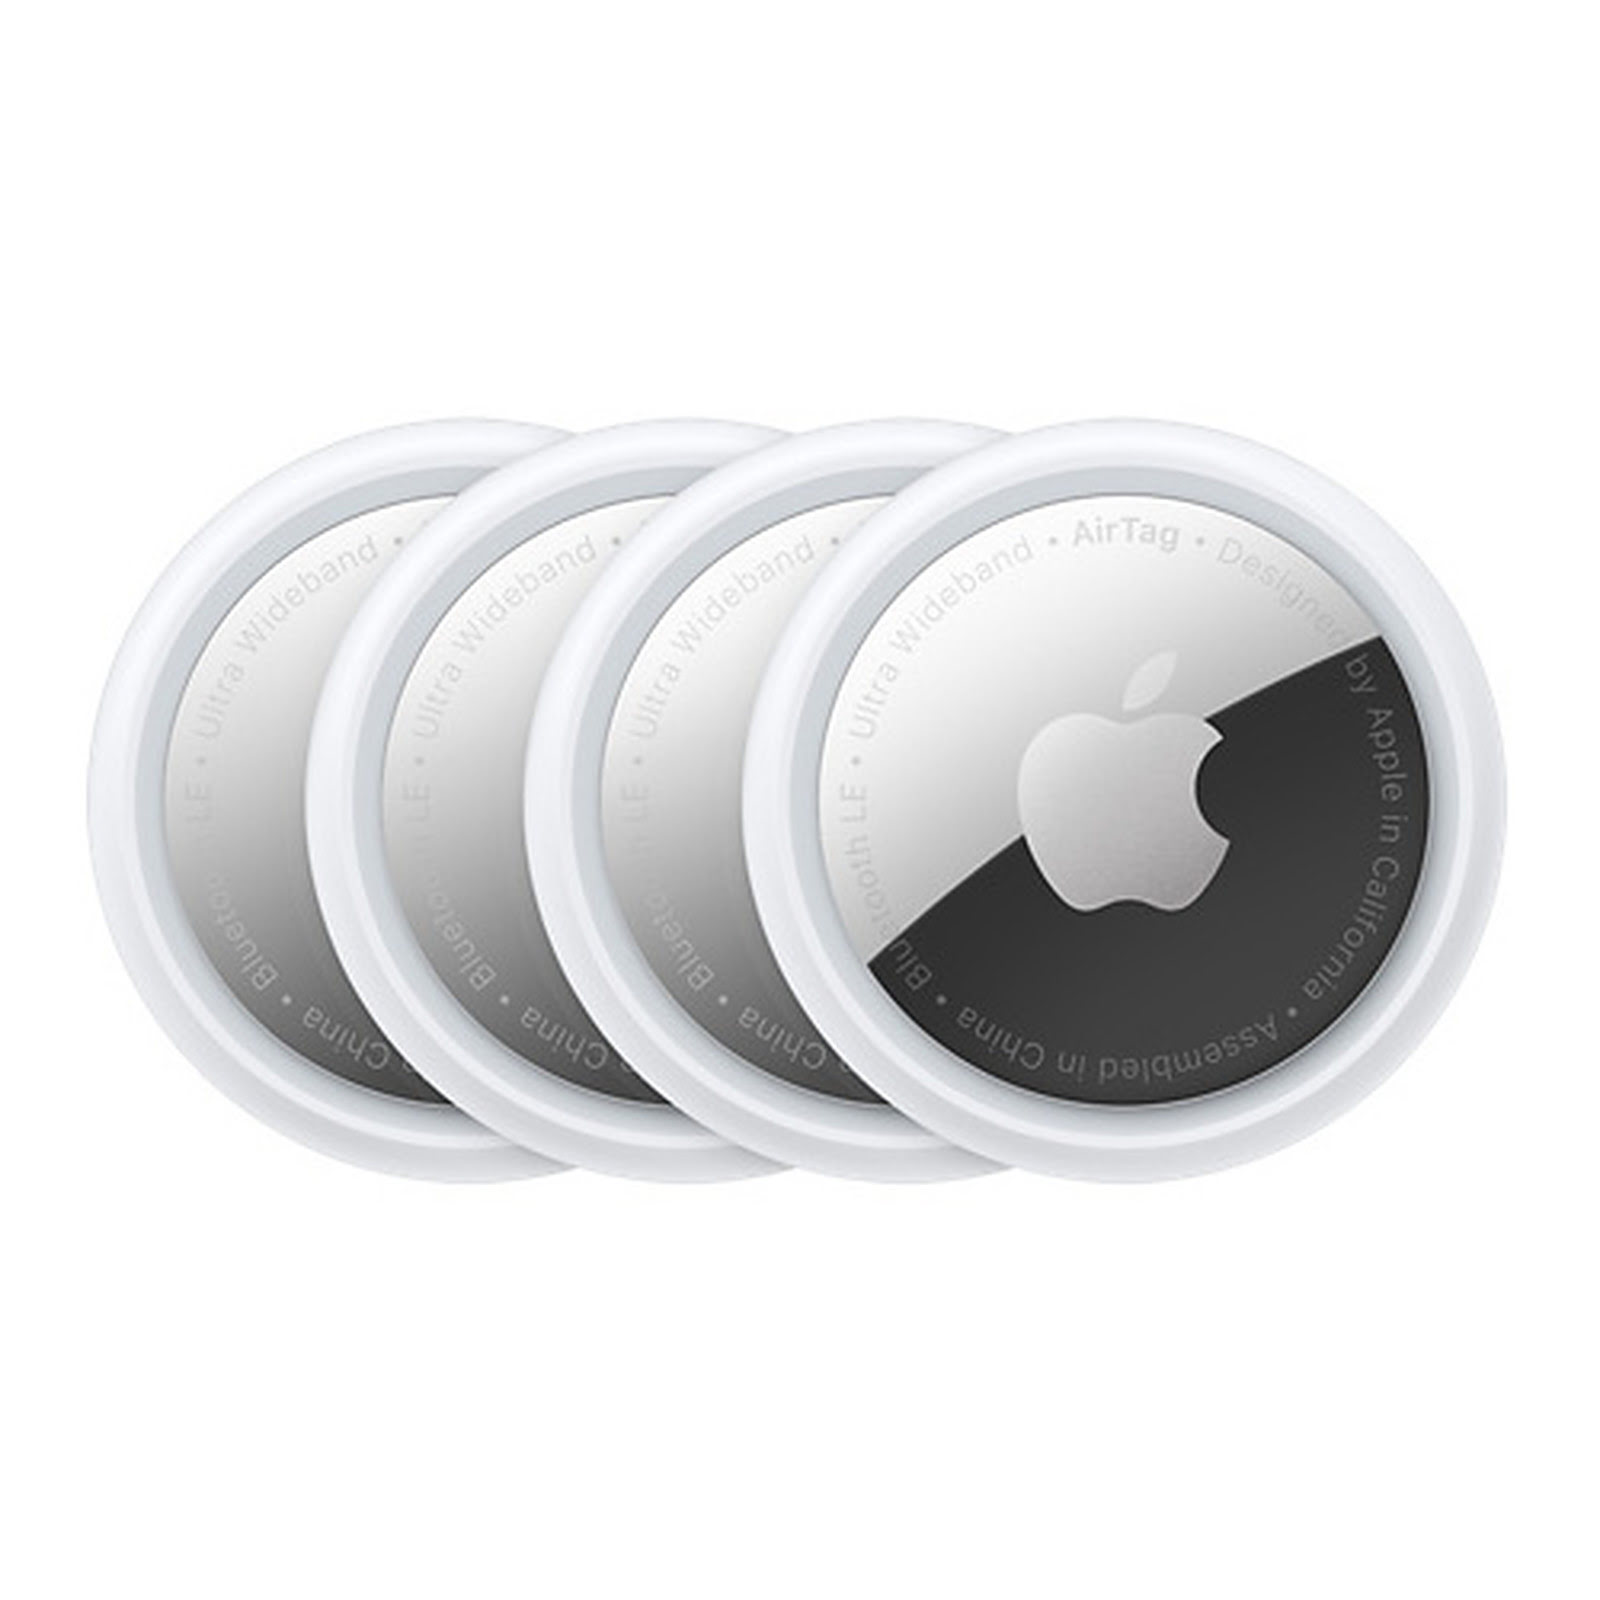 Tracker connecté Apple AirTag (Pack de 4) - Accessoire téléphonie Apple - 0